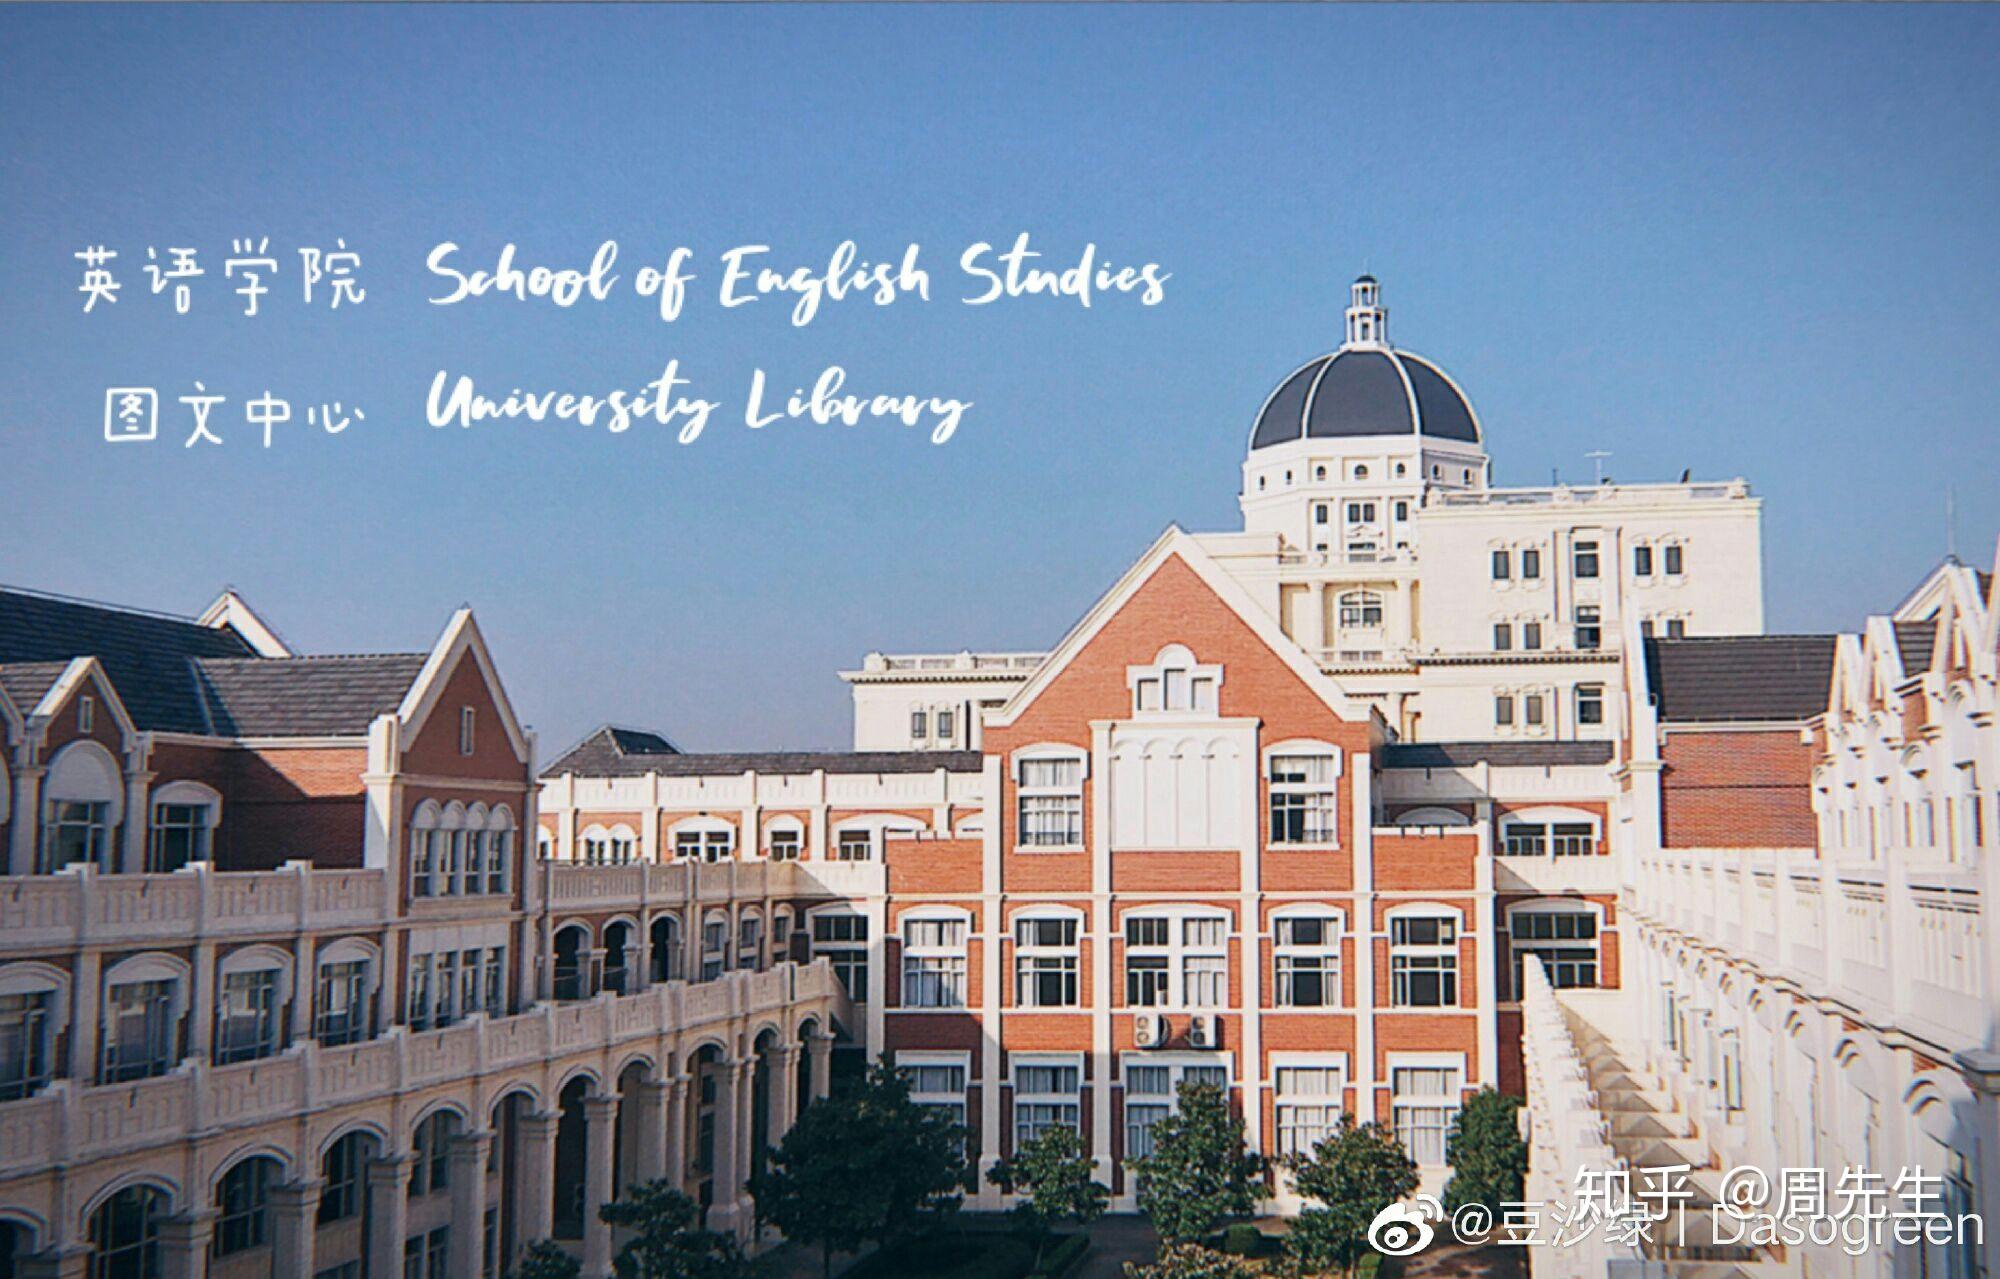 北京外国语大学2020年教学科研岗位招聘公告 —北京站—中国教育在线